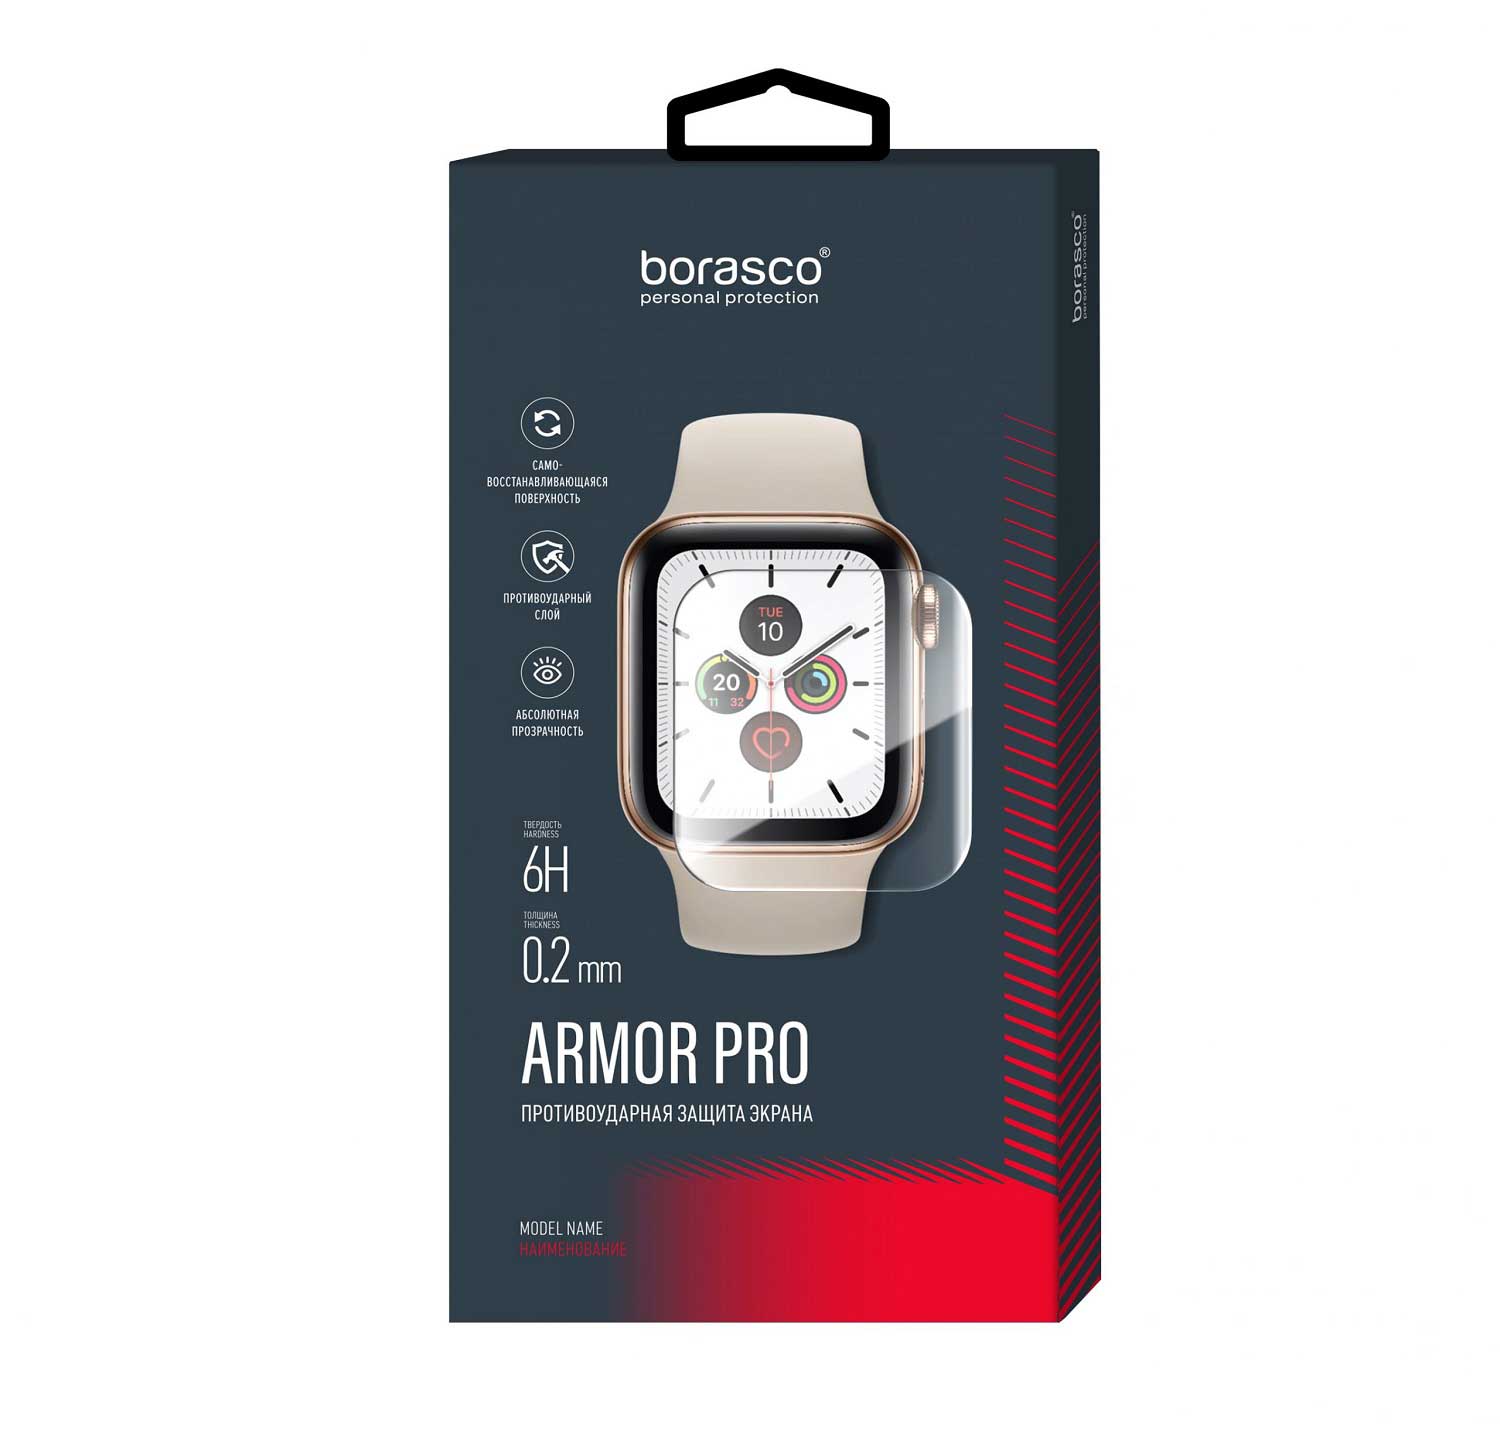 Защита экрана BoraSCO Armor Pro для Xiaomi Mi Band 6 защита экрана borasco armor pro для honor band 6 матовый